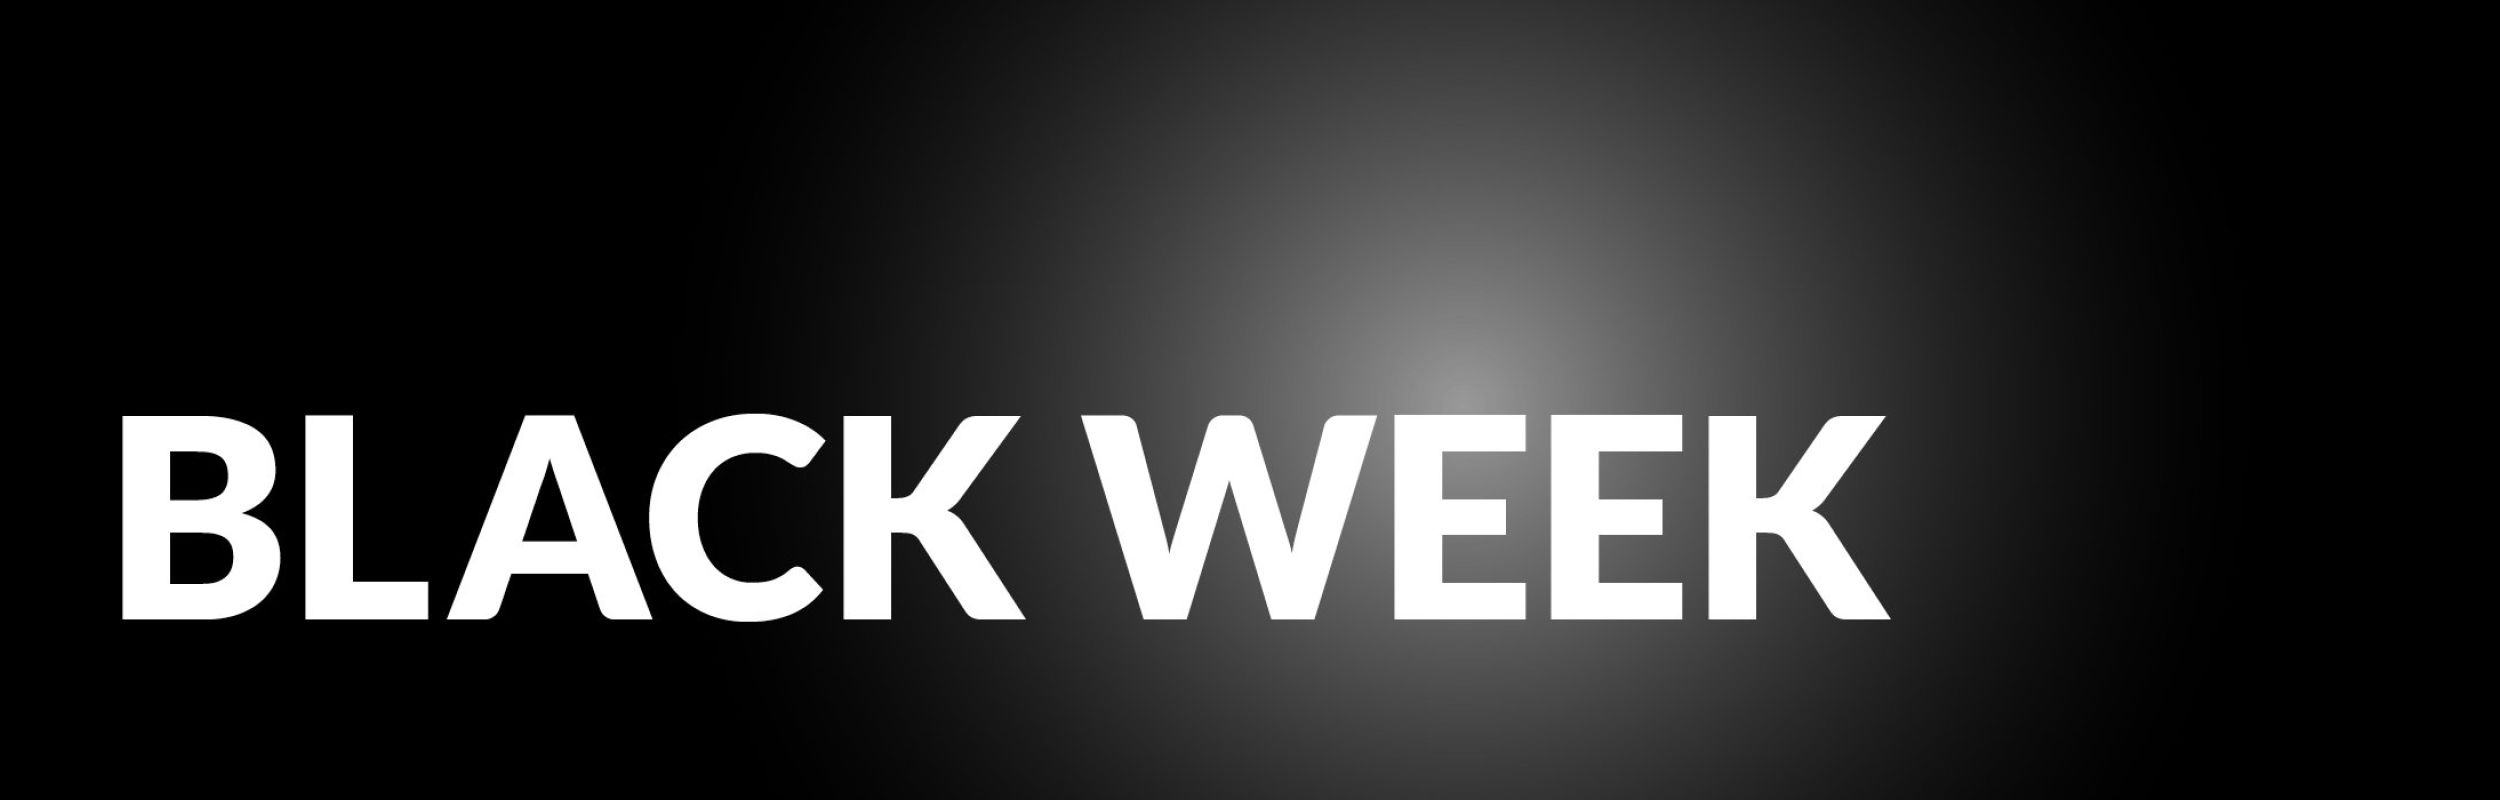 22 11 Welteke Black Week Stressless Header 2